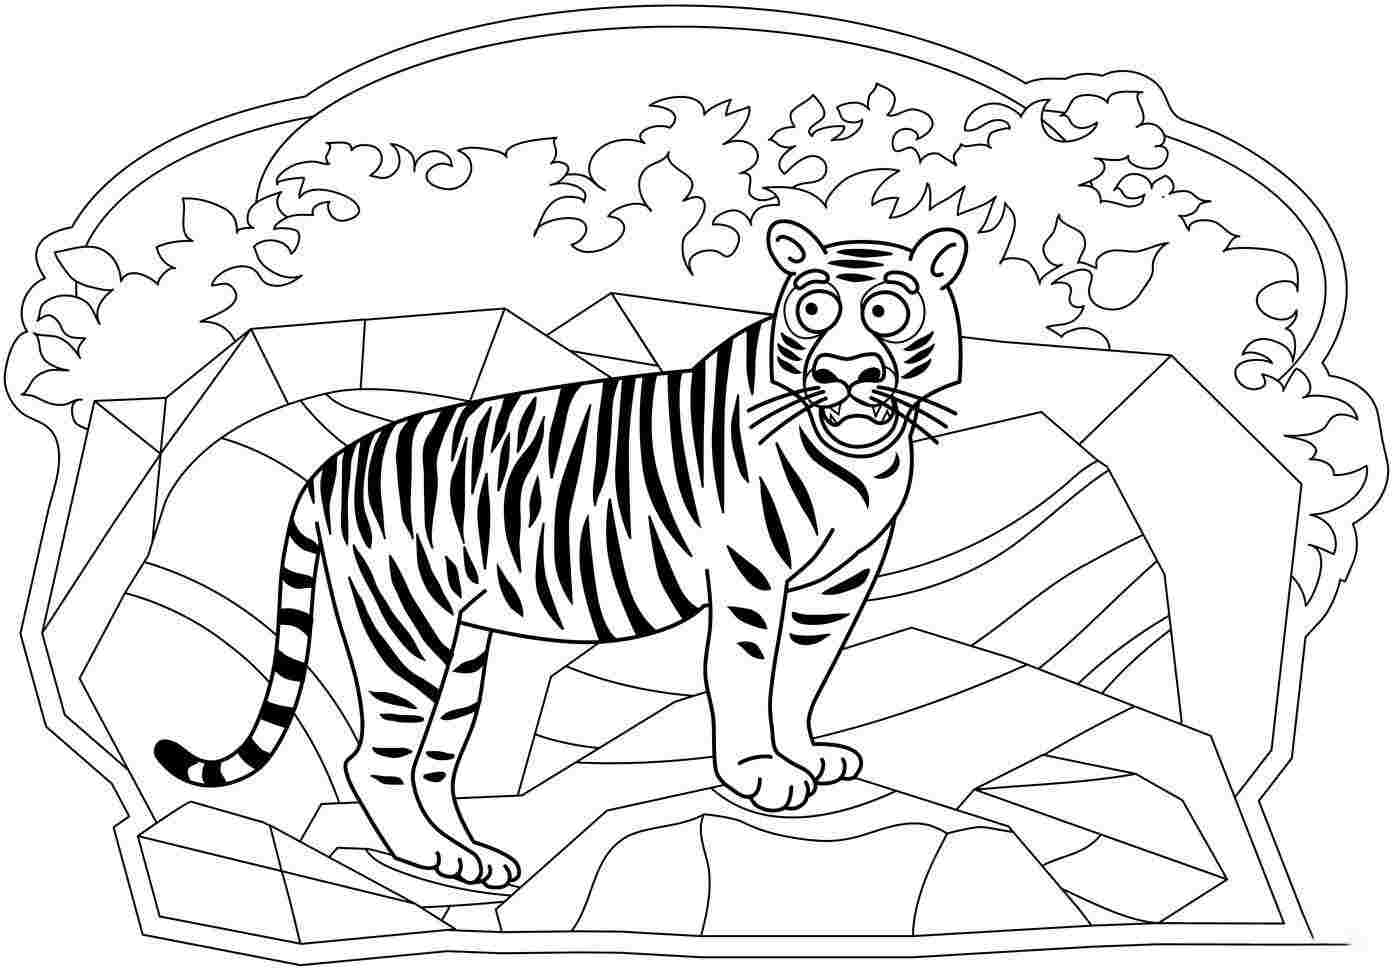 Lo sguardo sorpreso della tigre sulla scogliera di Tiger